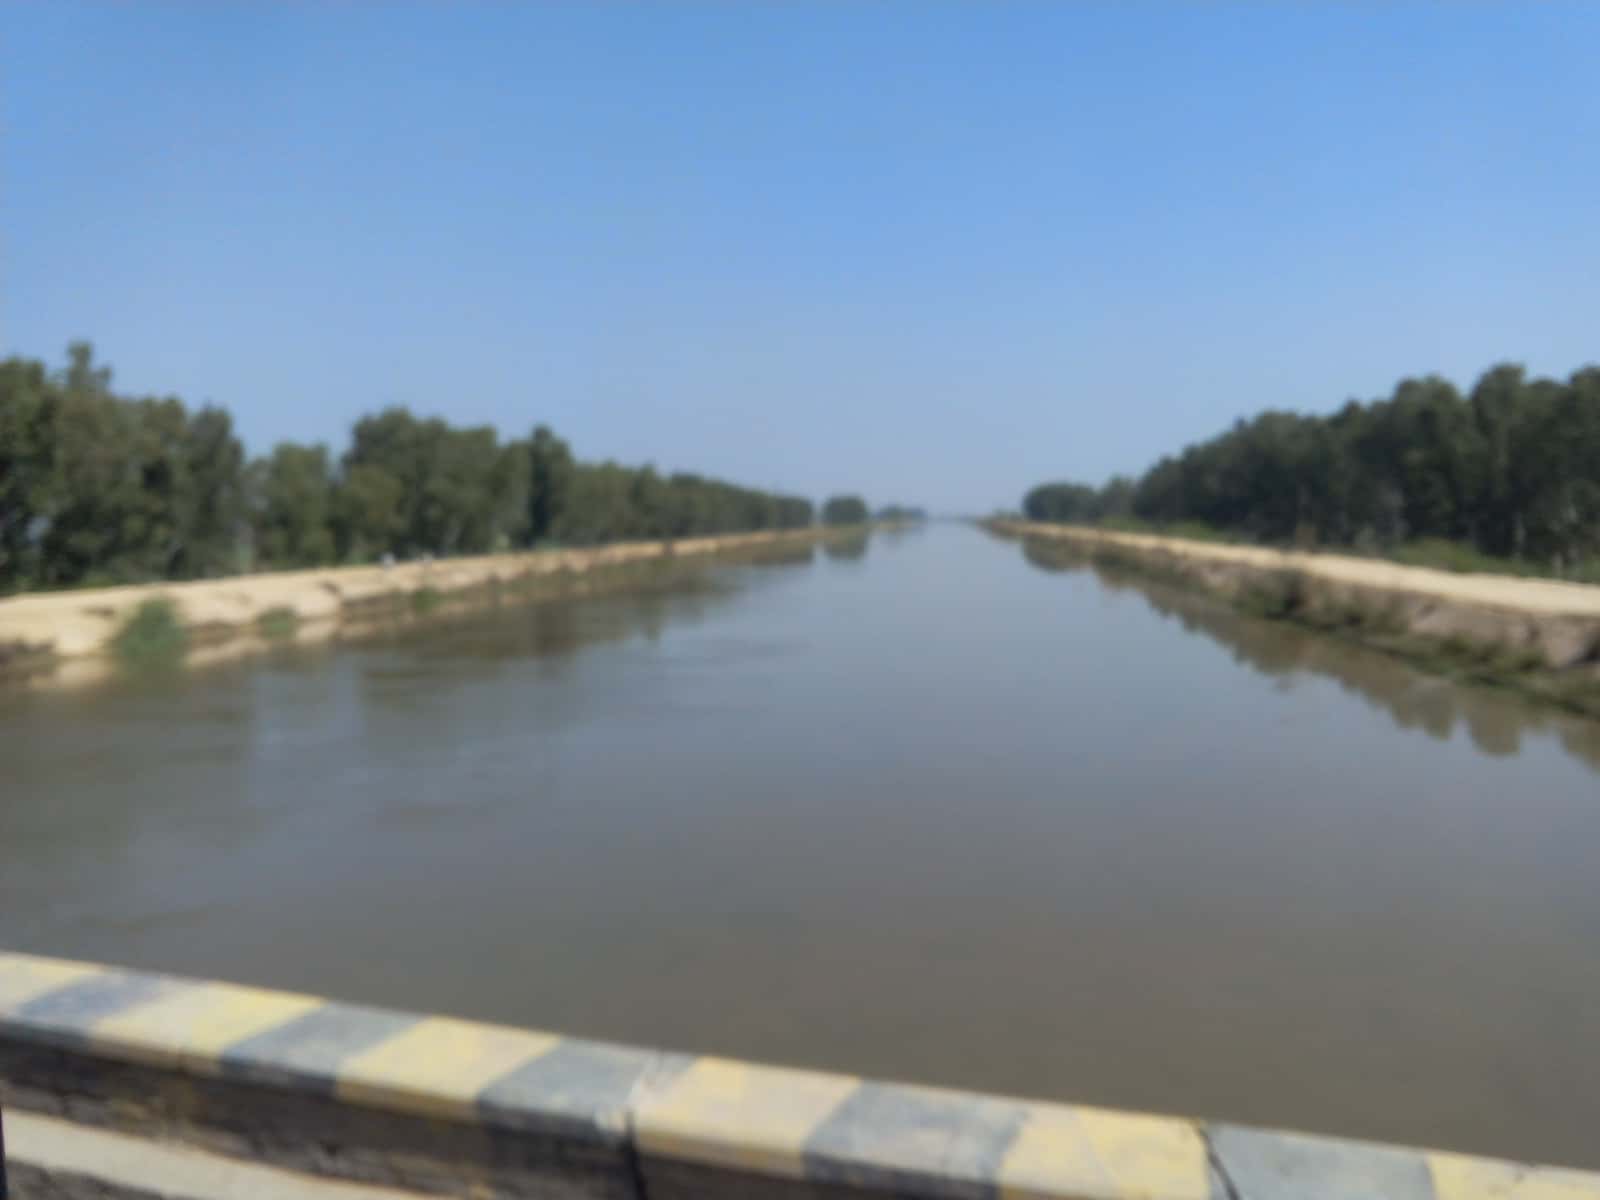 राजस्थान की प्रमुख सिंचाई परियोजनाएँ (Major irrigation projects of Rajasthan)